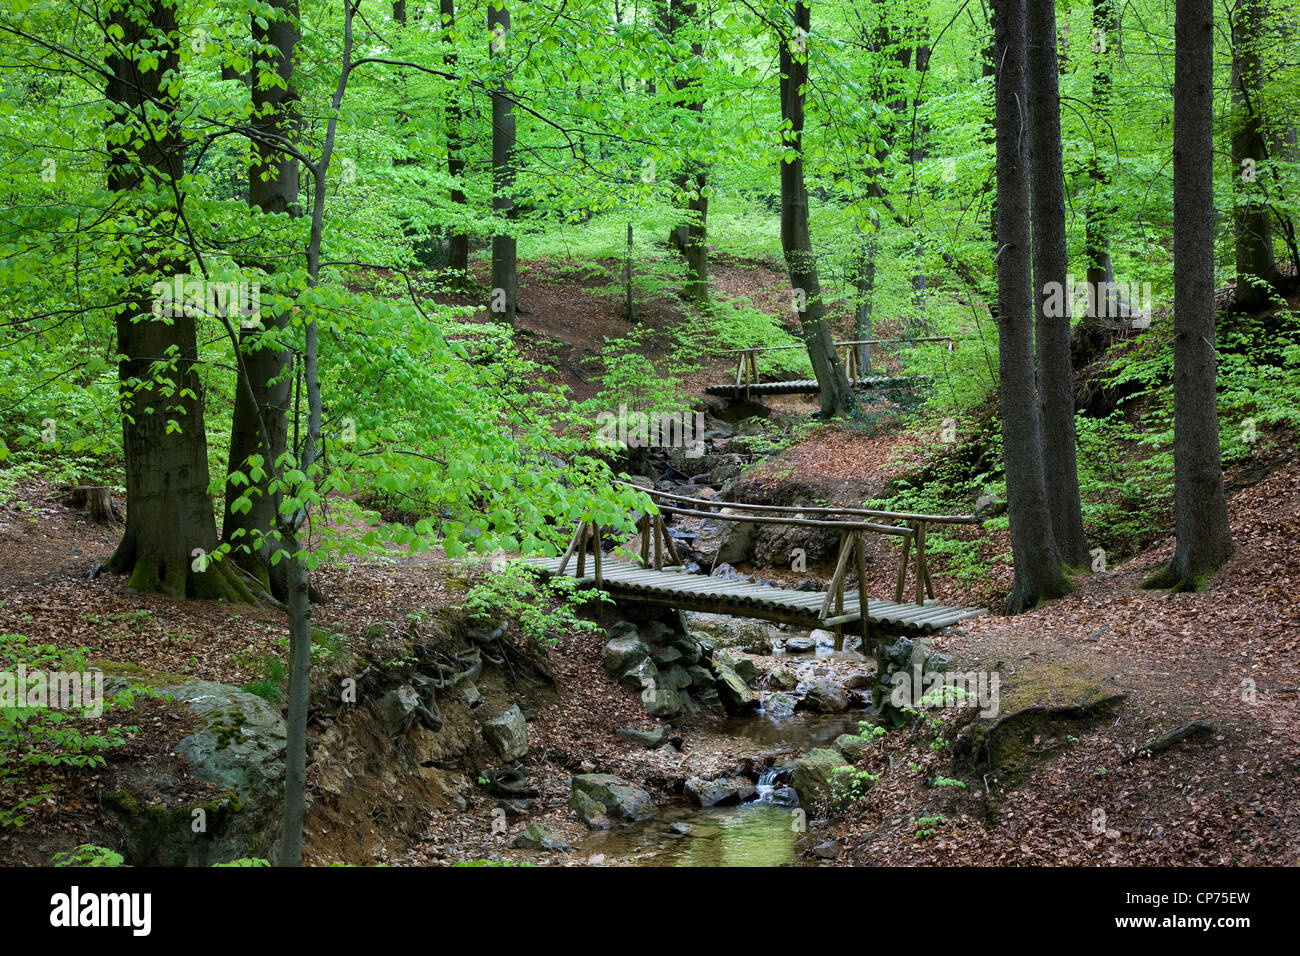 Wooden footbridge over brook in beech forest in spring, Belgium Stock Photo